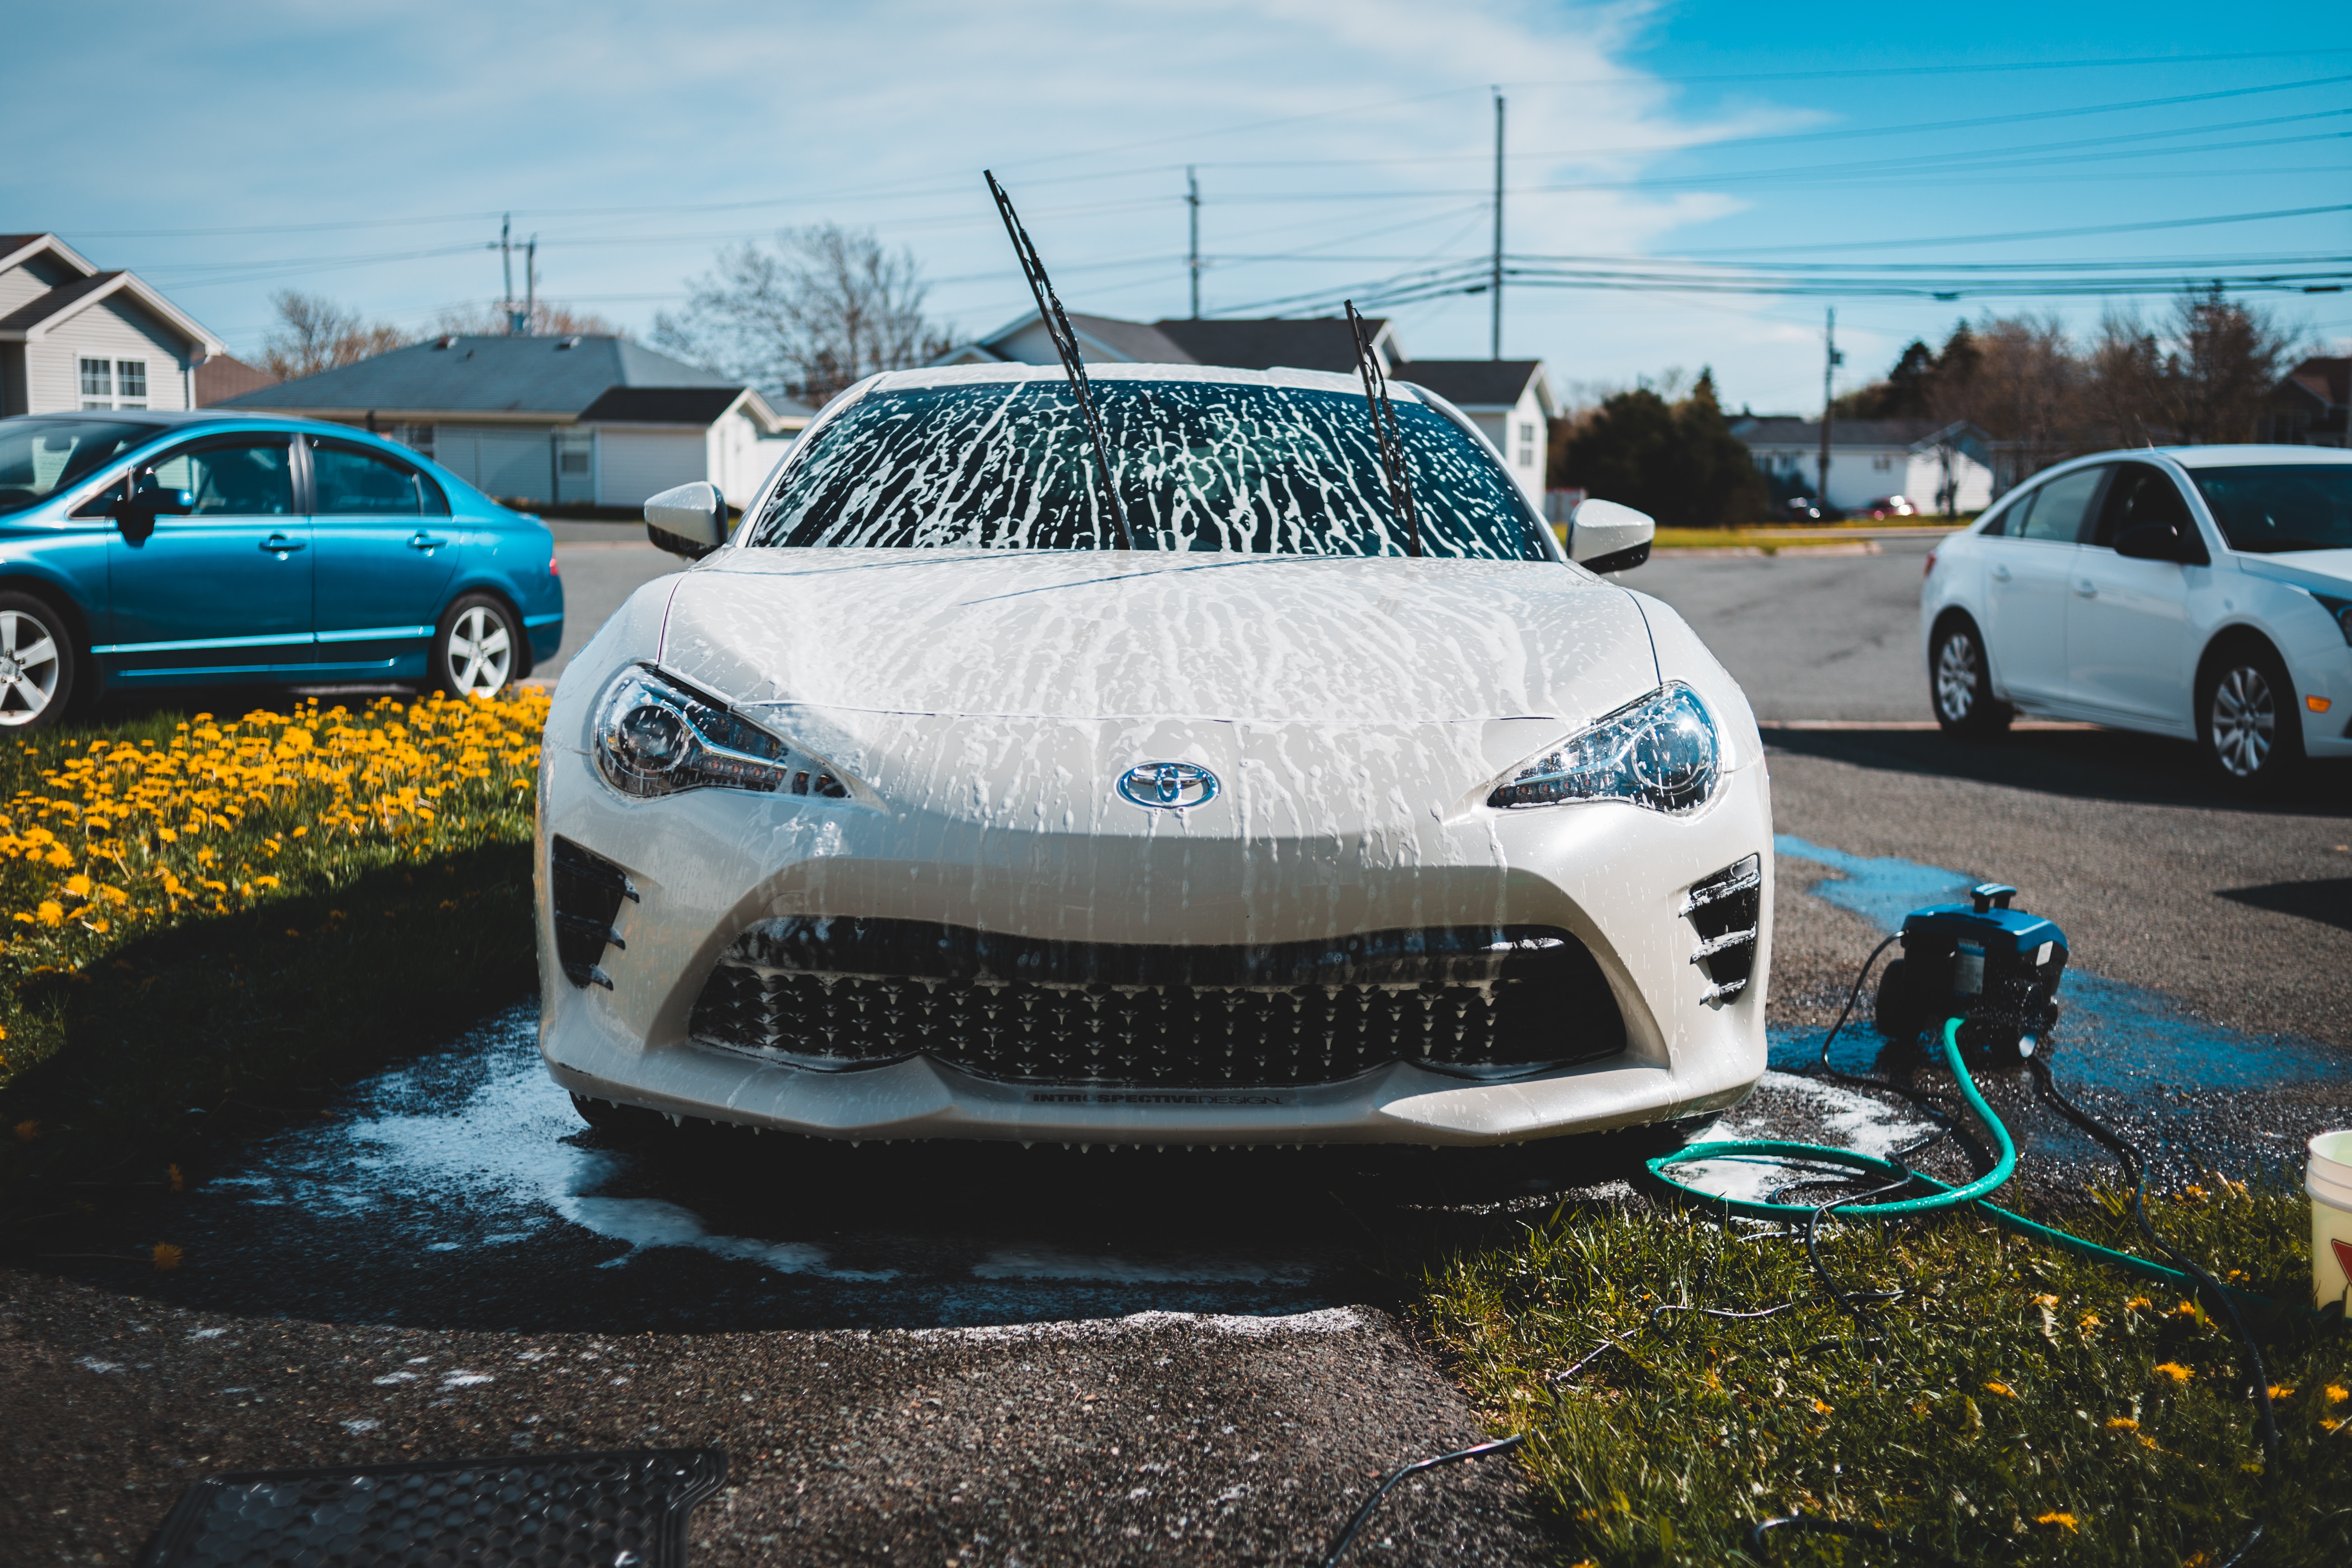 下回り 洗車 車 【下回りの洗車】自分で簡単に洗車できるアイテムを自作したのでご紹介!